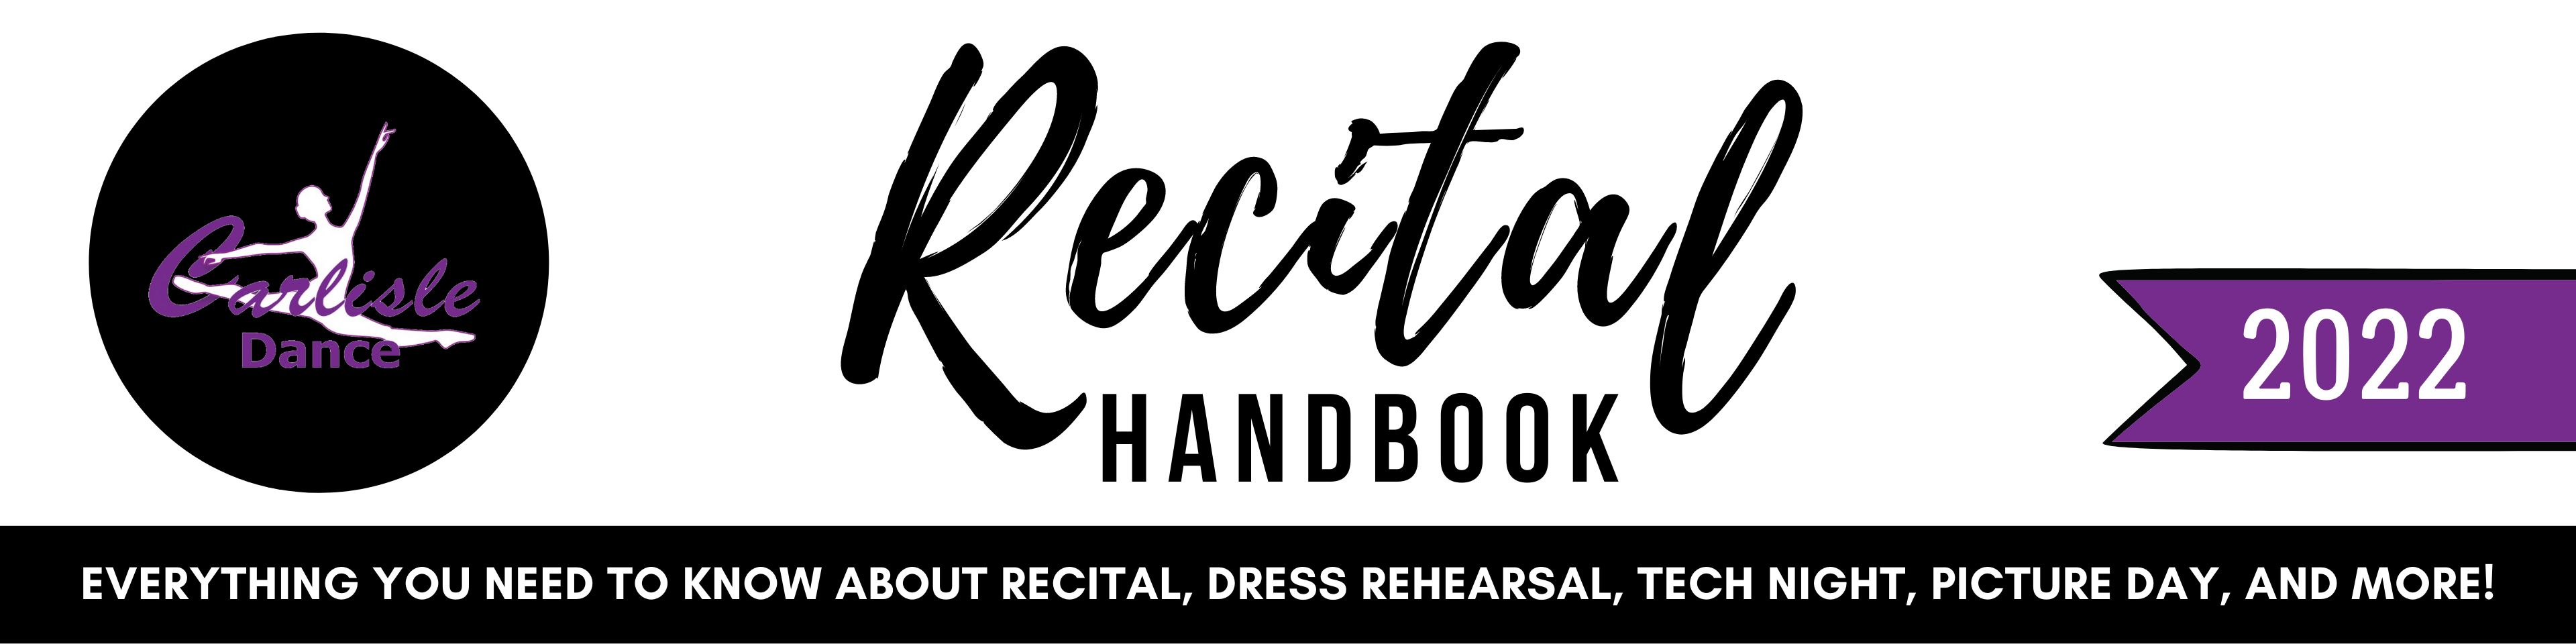 recital handbook